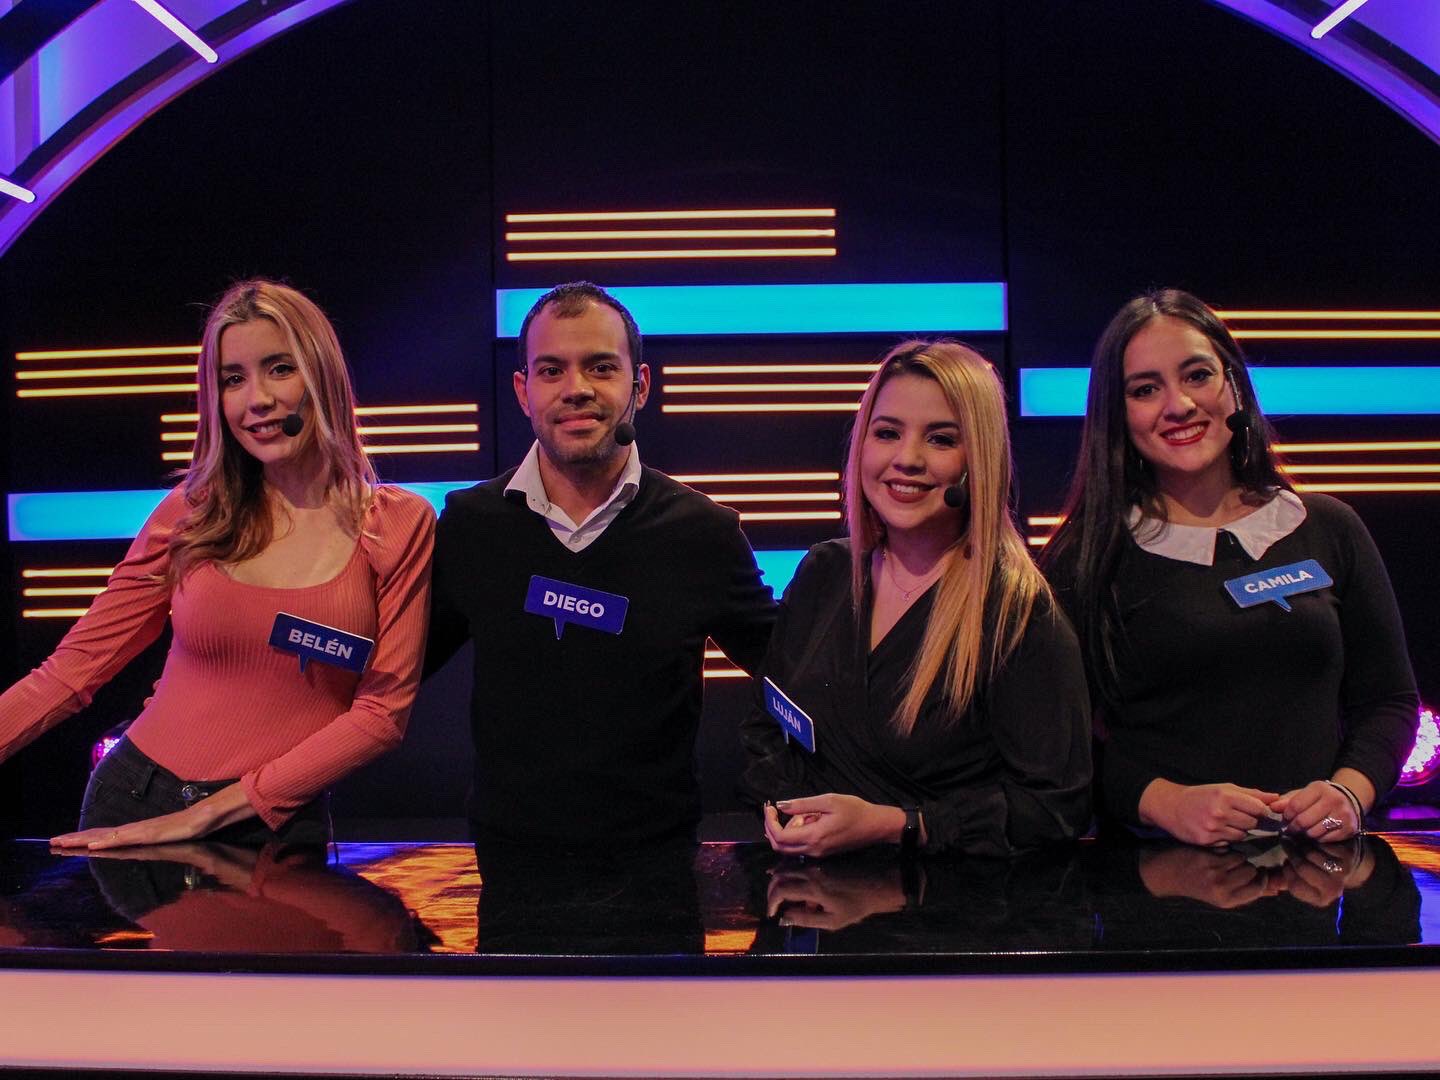 El grupo de “Las Cabritas a Fondo” compuesto por Belén, Diego, Luján y Camila.